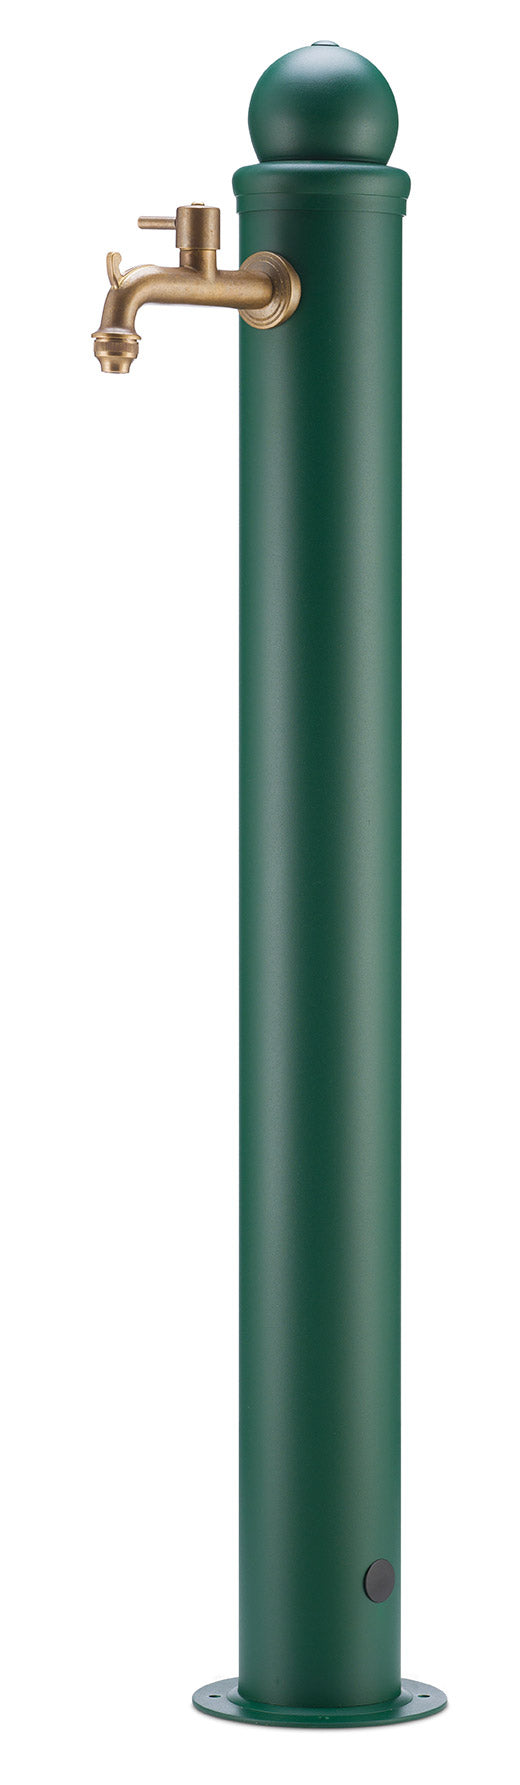 Fontana da Giardino Alta con Rubinetto Belfer 42/ARM Verde prezzo